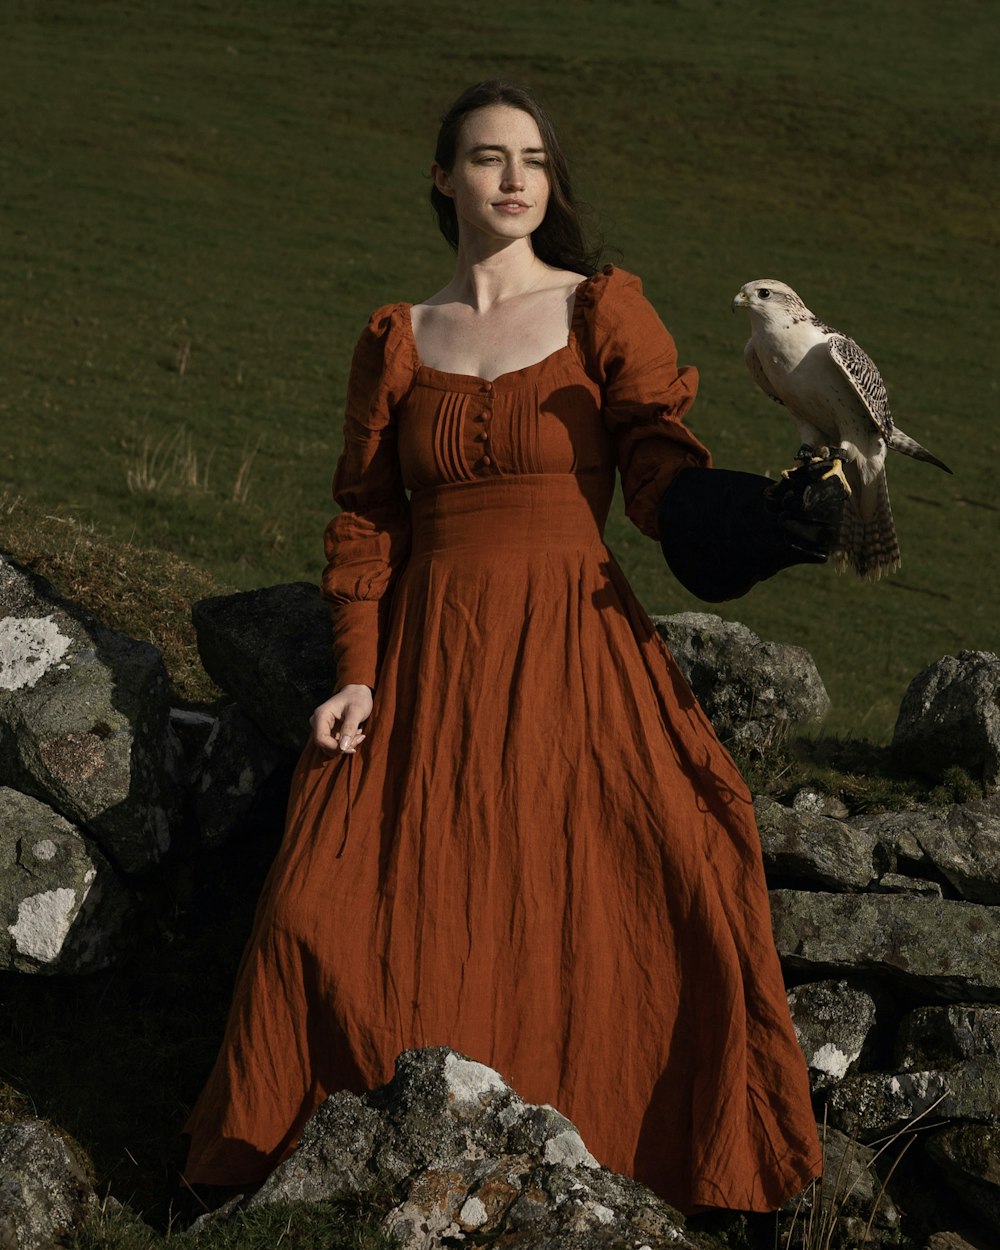 鳥を抱くオレンジ色のドレスを着た女性